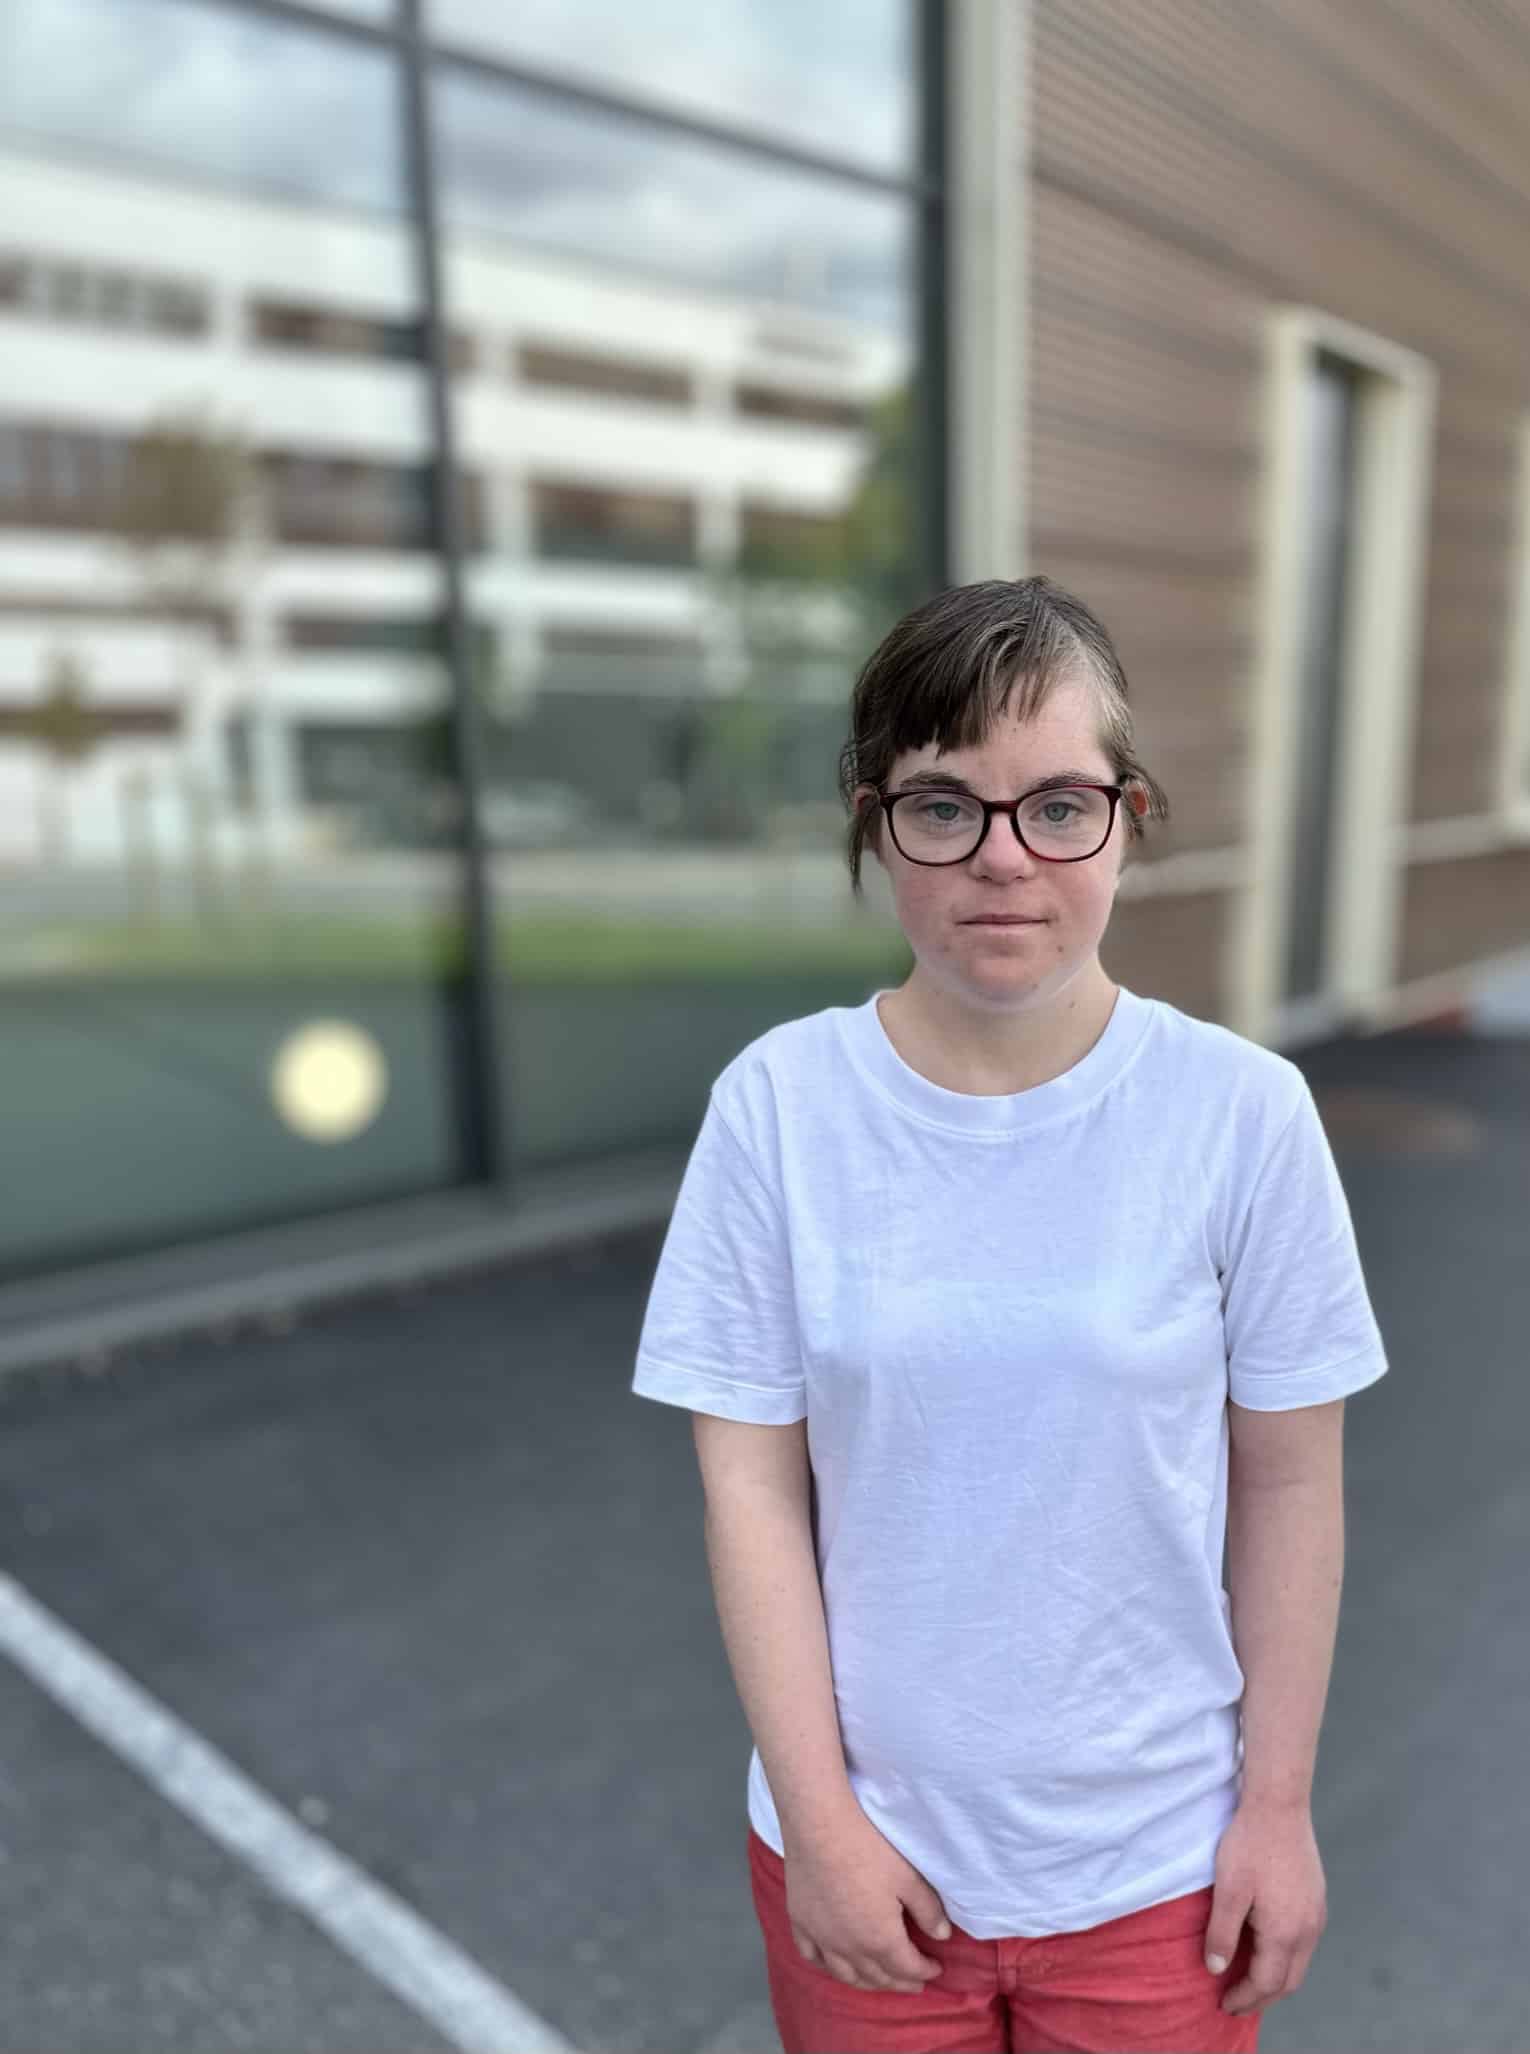 Kvinne med Downs syndrom som står utenfor en bygning